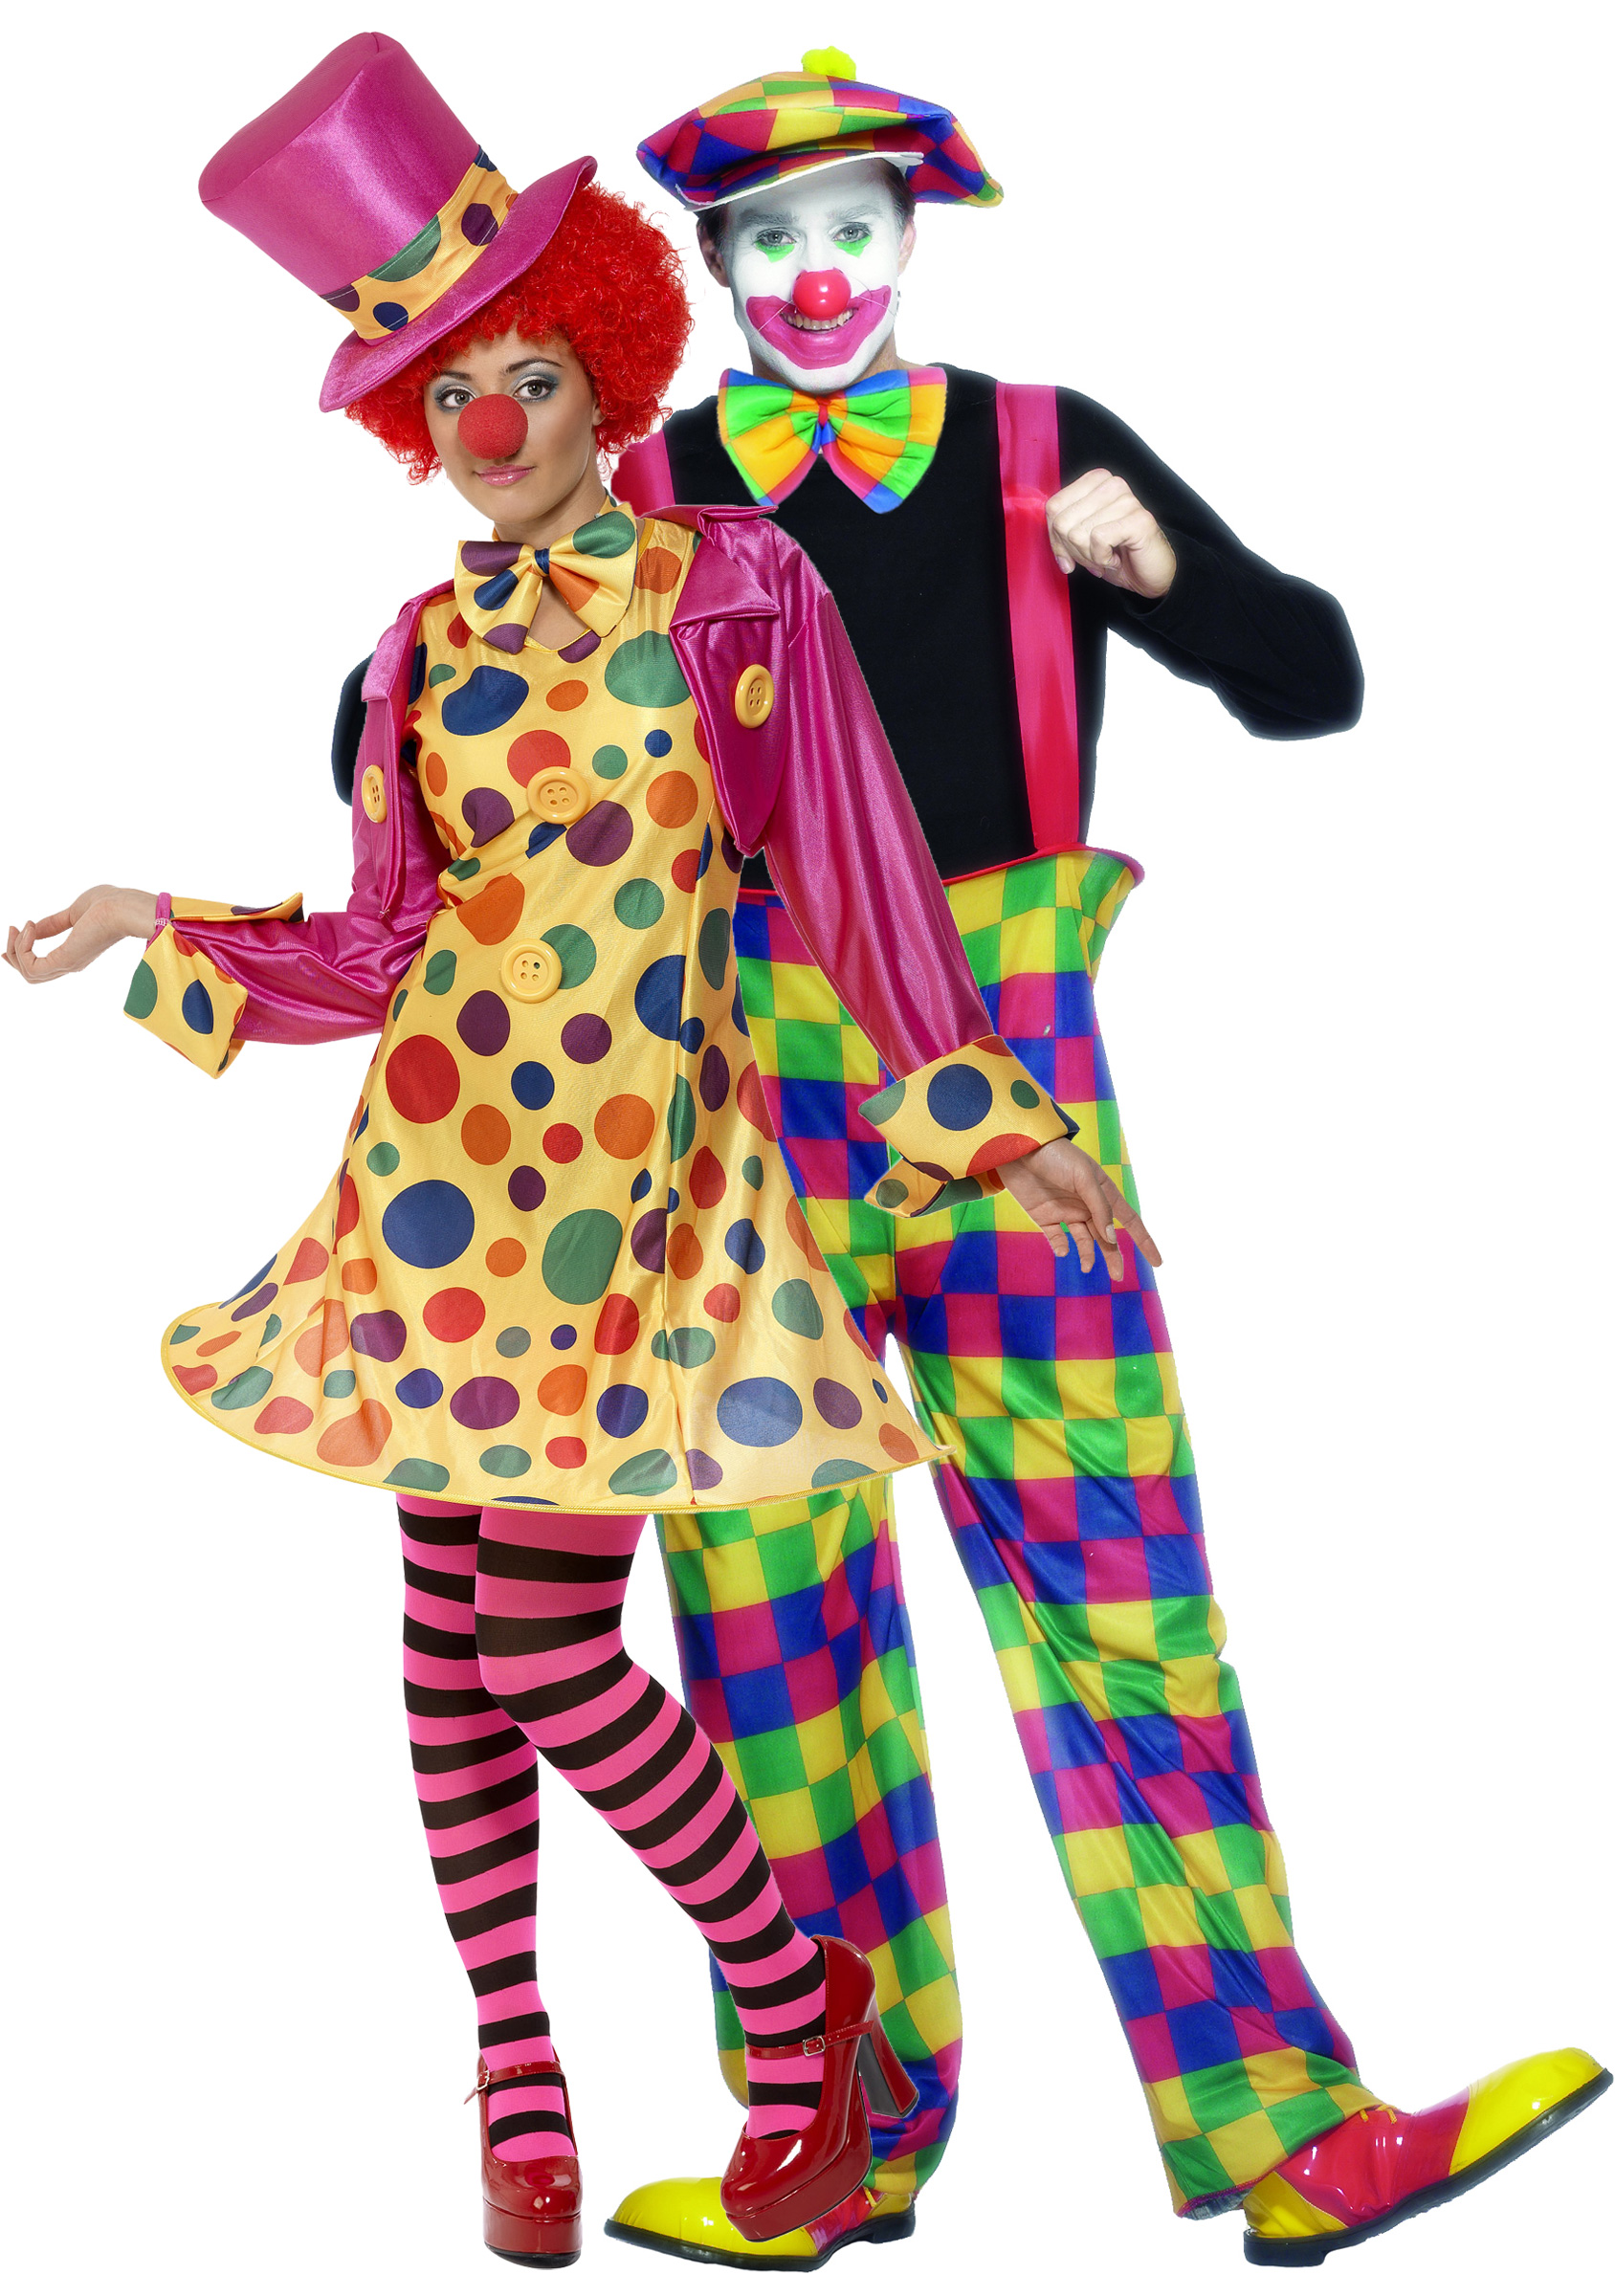 http://www.deguisement-carnaval.net/wp-content/uploads/2011/12/d%C3%A9guisement-couple-clown.jpg